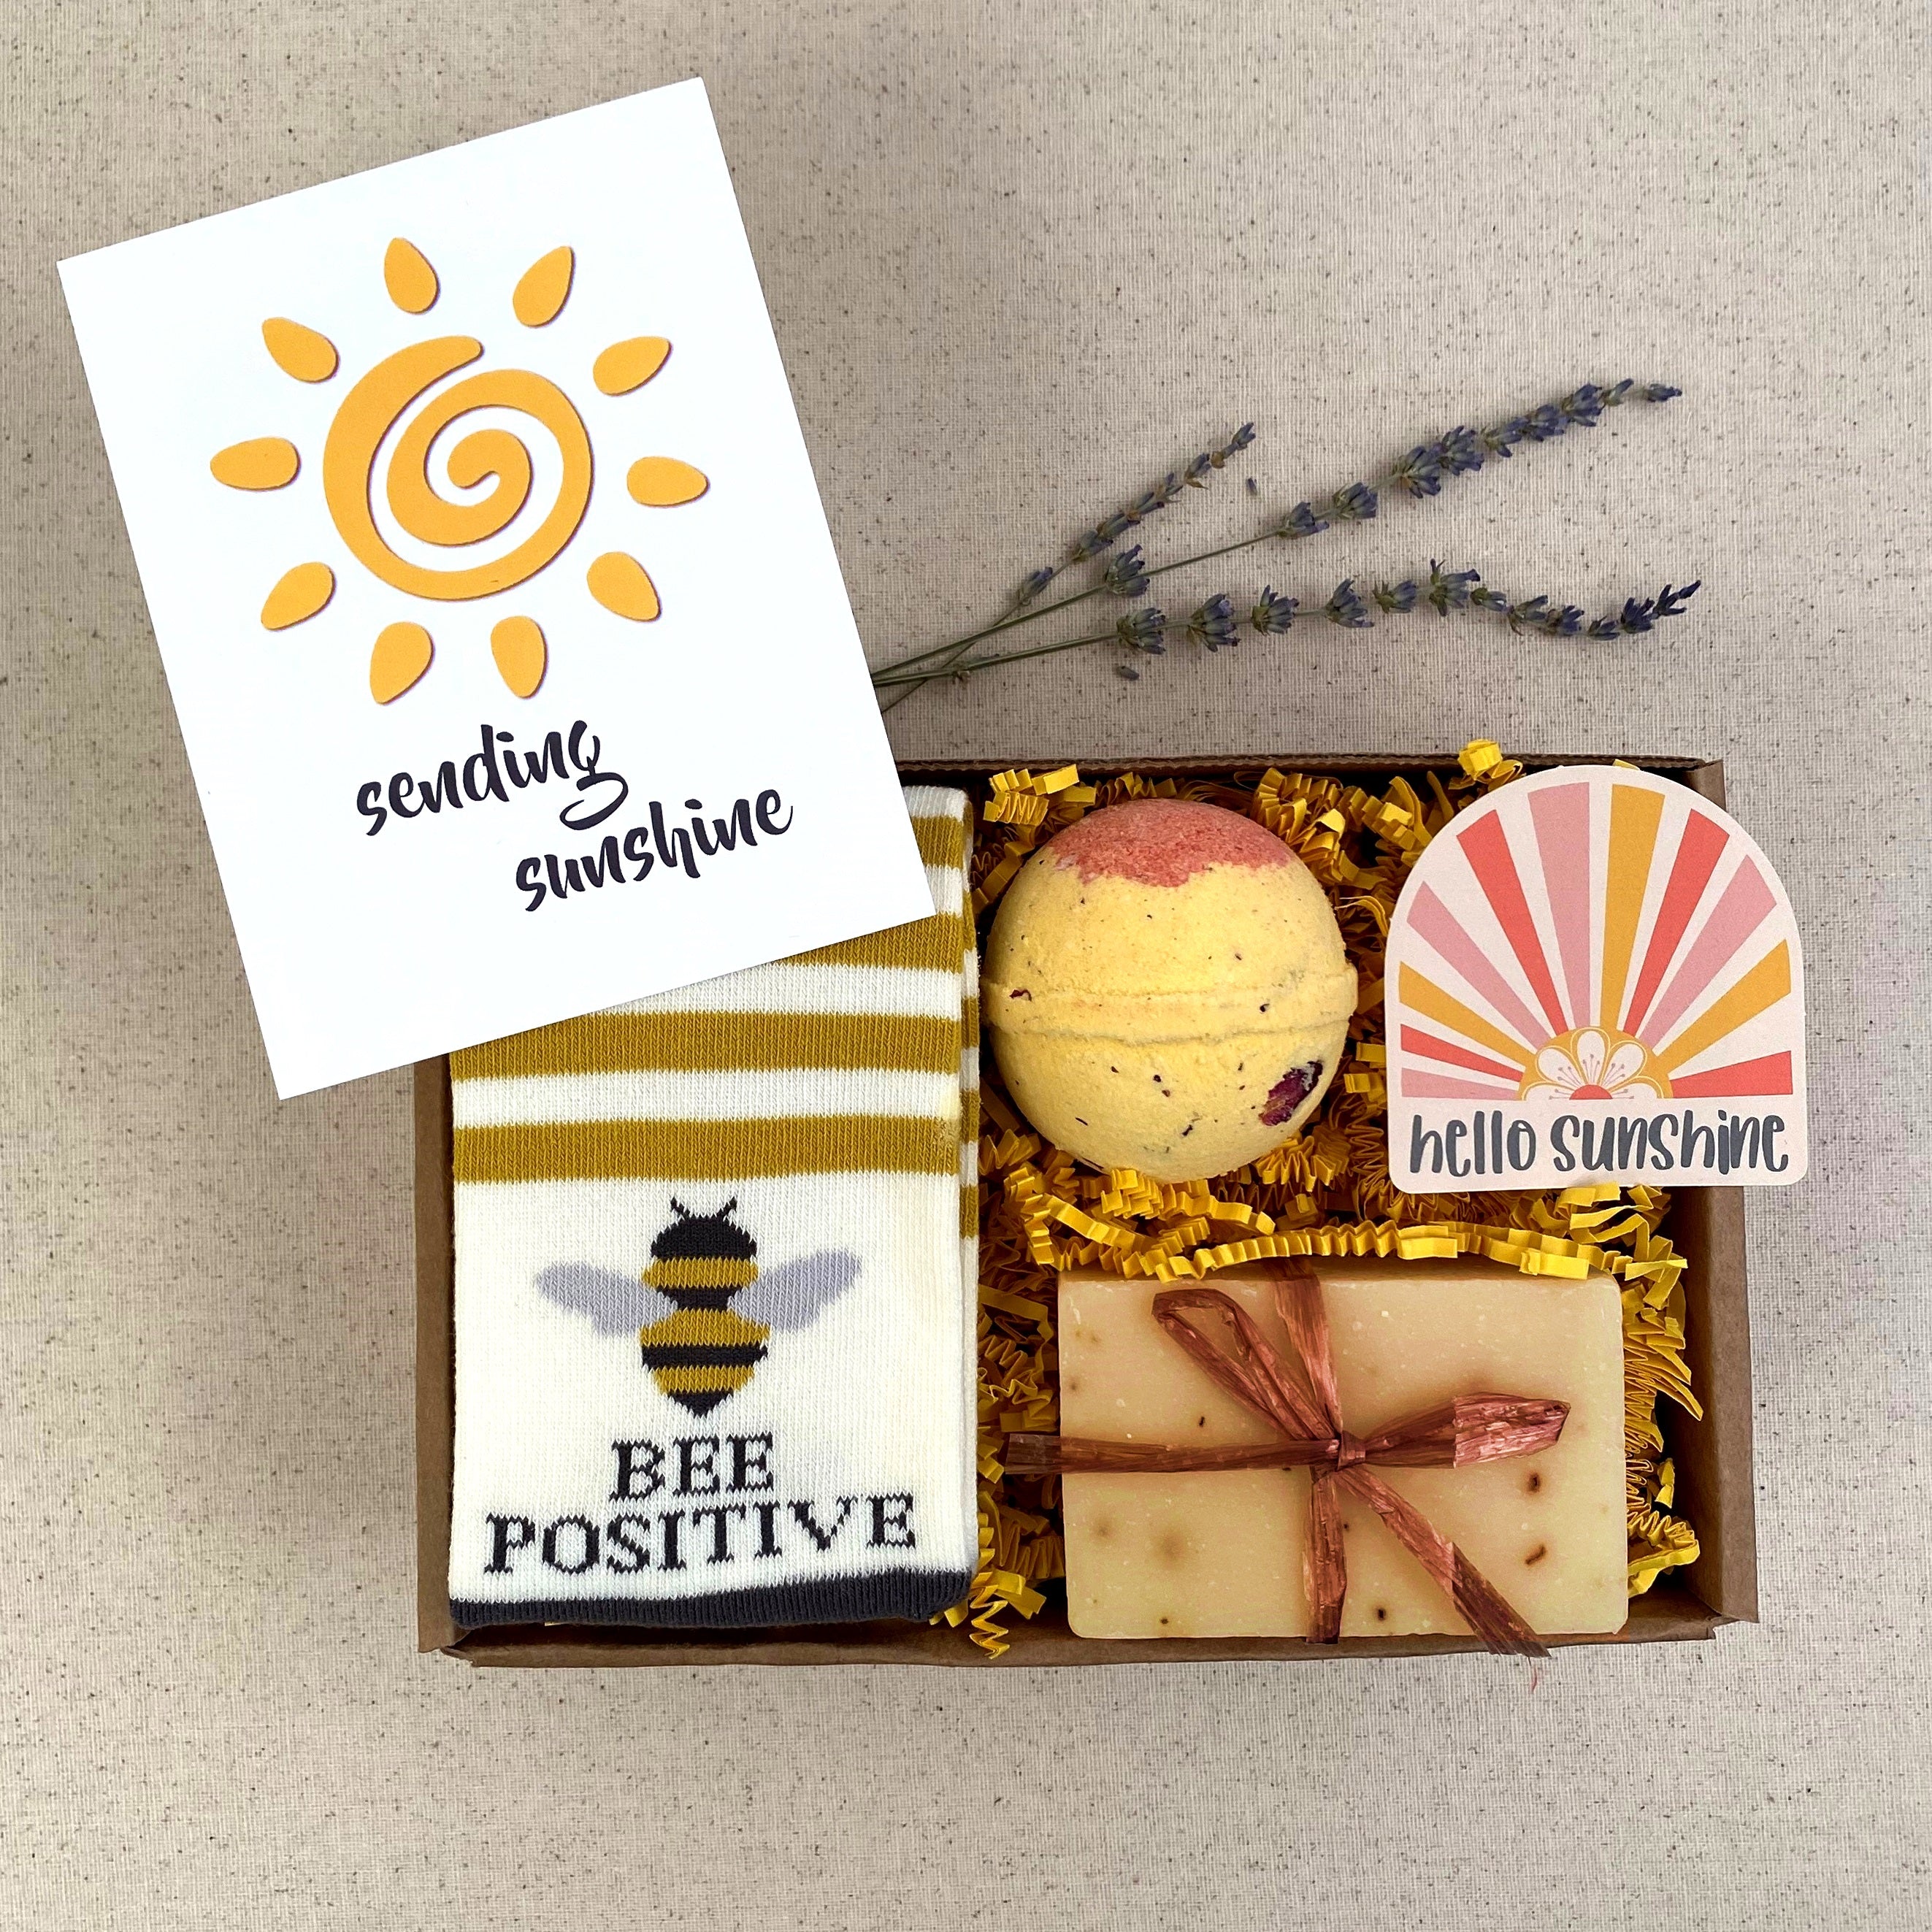 Sending Sunshine Gift Box